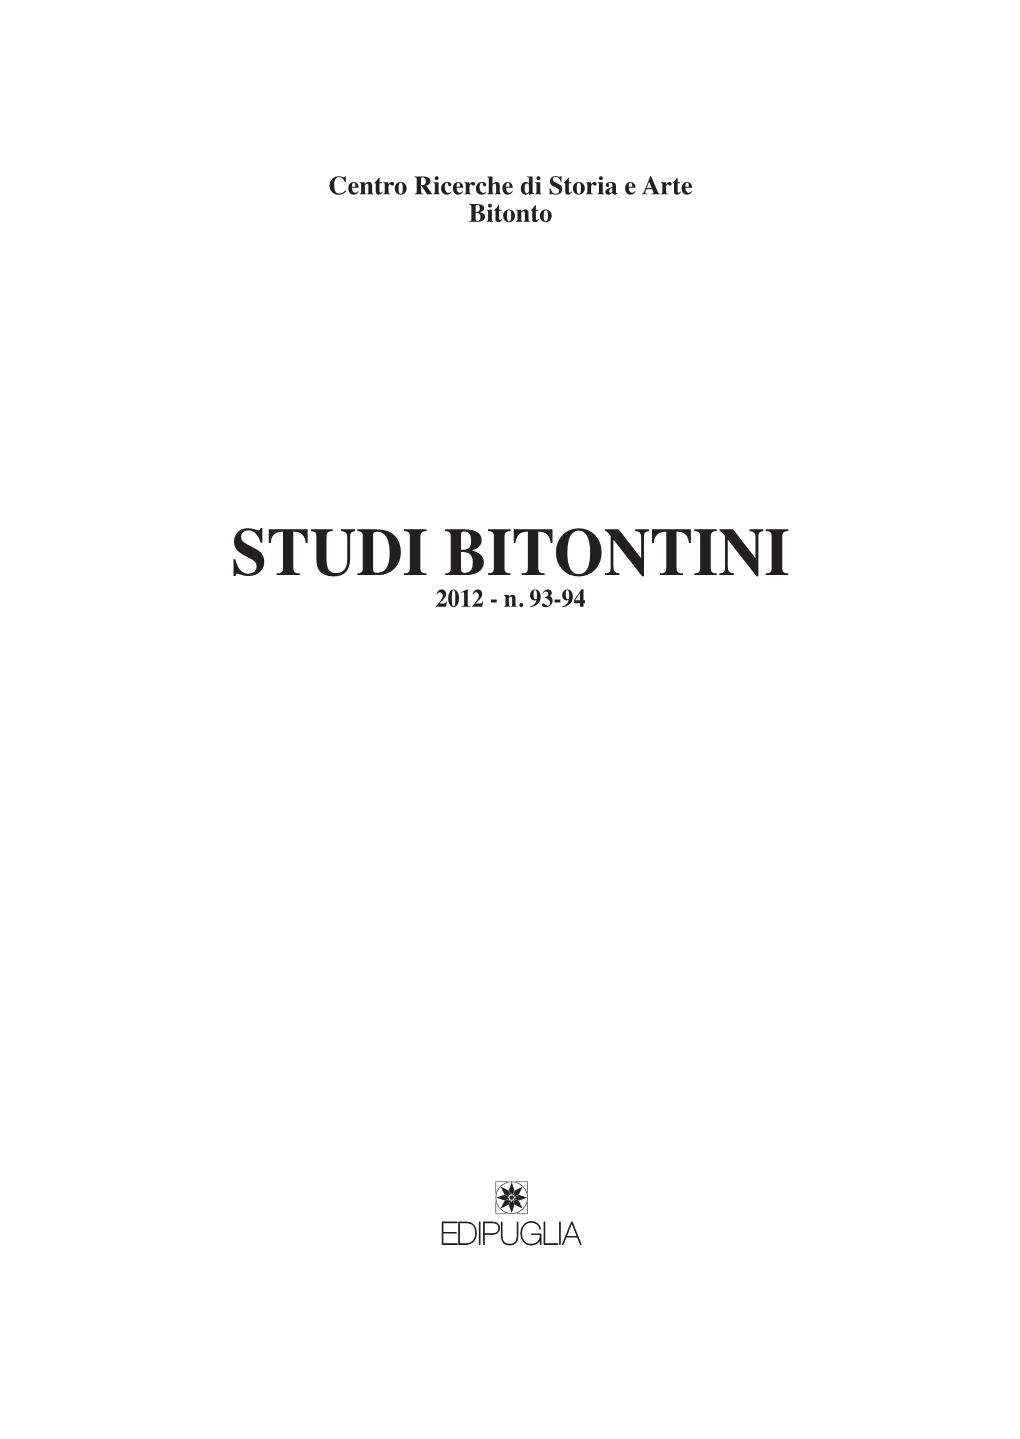 STUDI BITONTINI 2012 - N